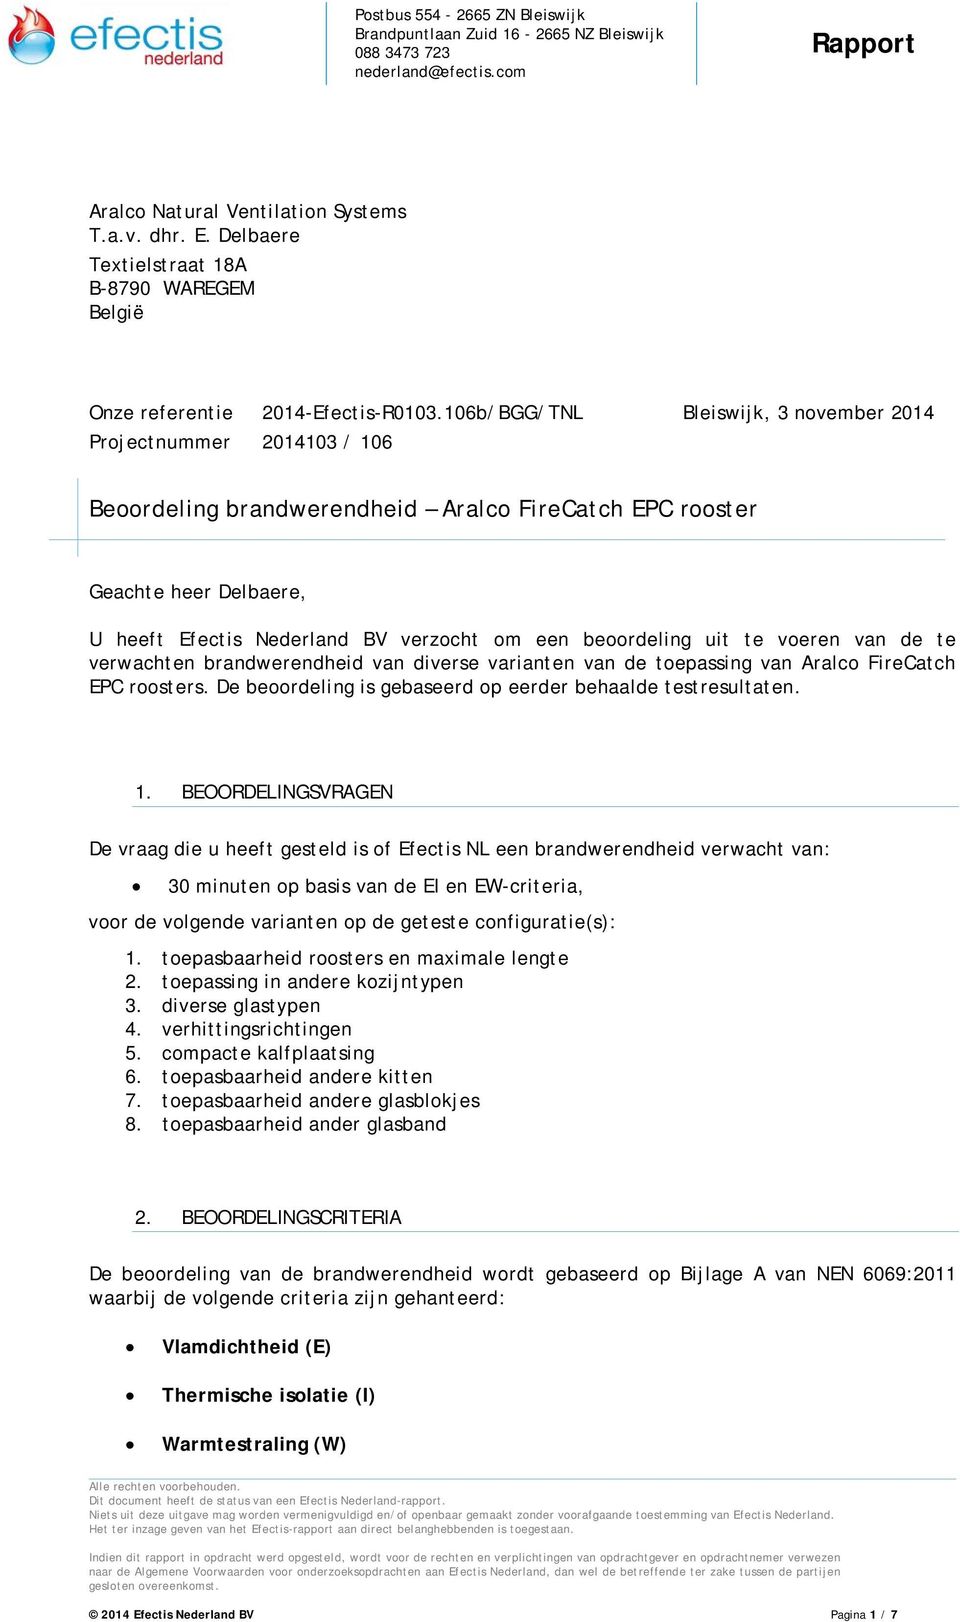 Nederland BV verzocht om een beoordeling uit te voeren van de te verwachten brandwerendheid van diverse varianten van de toepassing van Aralco FireCatch EPC roosters.